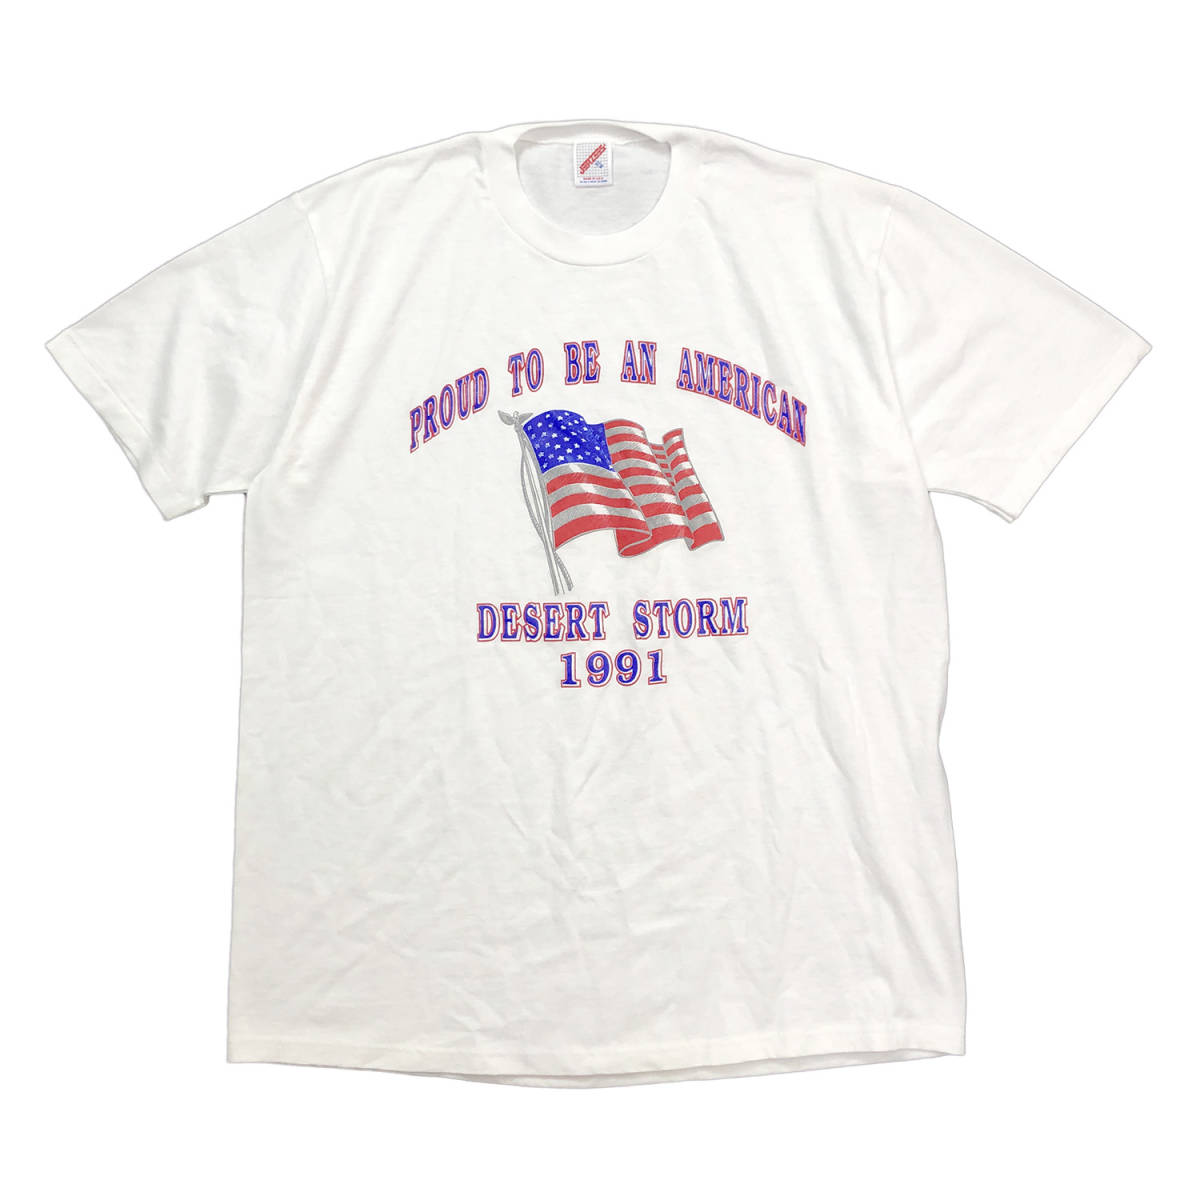 本物の 砂漠の嵐作戦 デザートストーム 湾岸戦争 1991年 USA製 90S 星条旗 BA2006 大きいサイズ シングルステッチ メンズXL Tシャツ ヴィンテージ イラスト、キャラクター